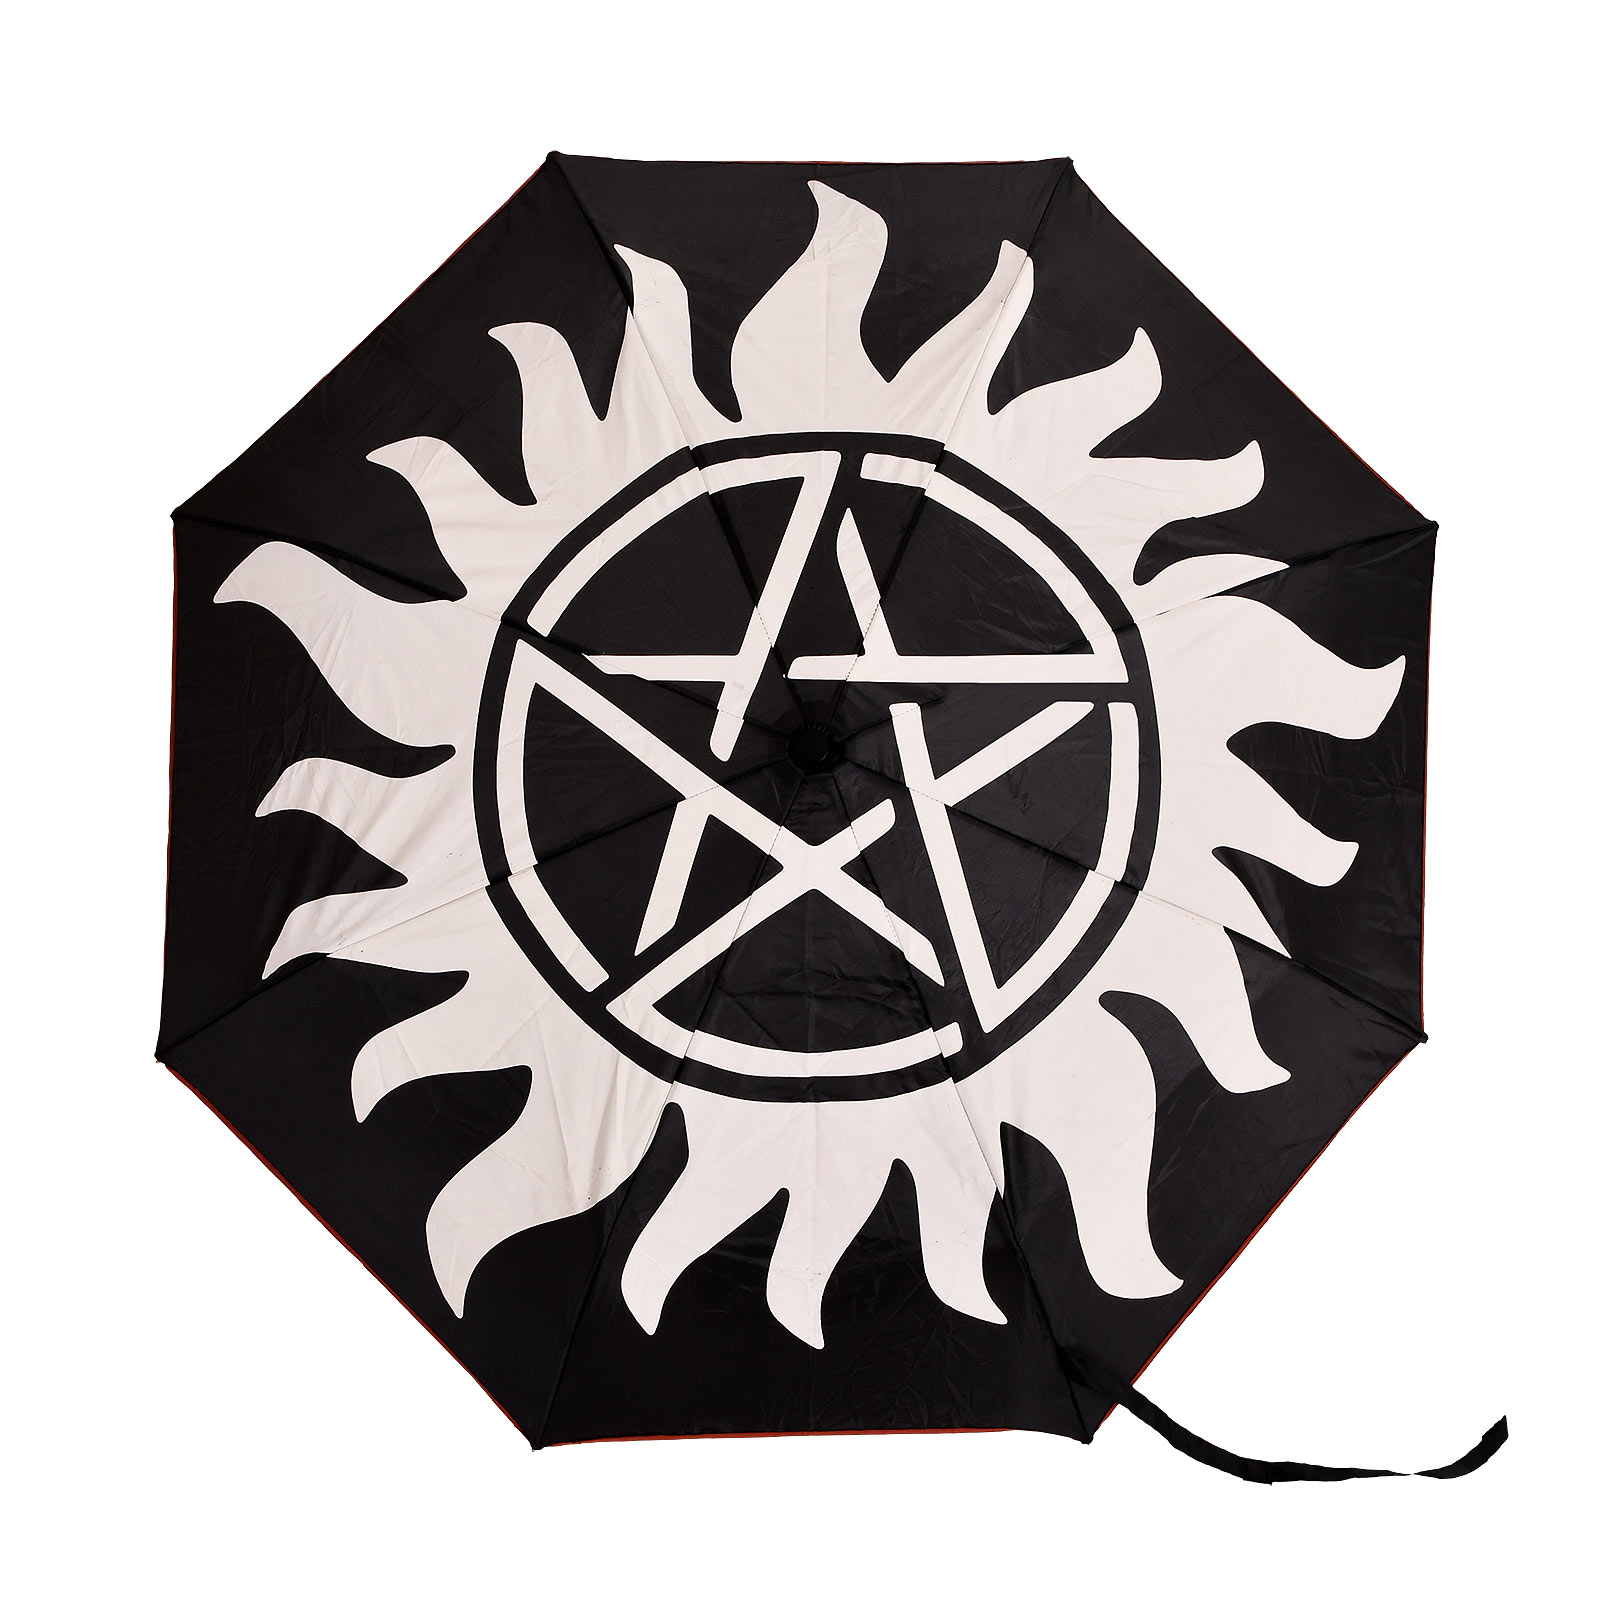 Supernatural - Anti Possession Symbol Umbrella with Aqua Effect